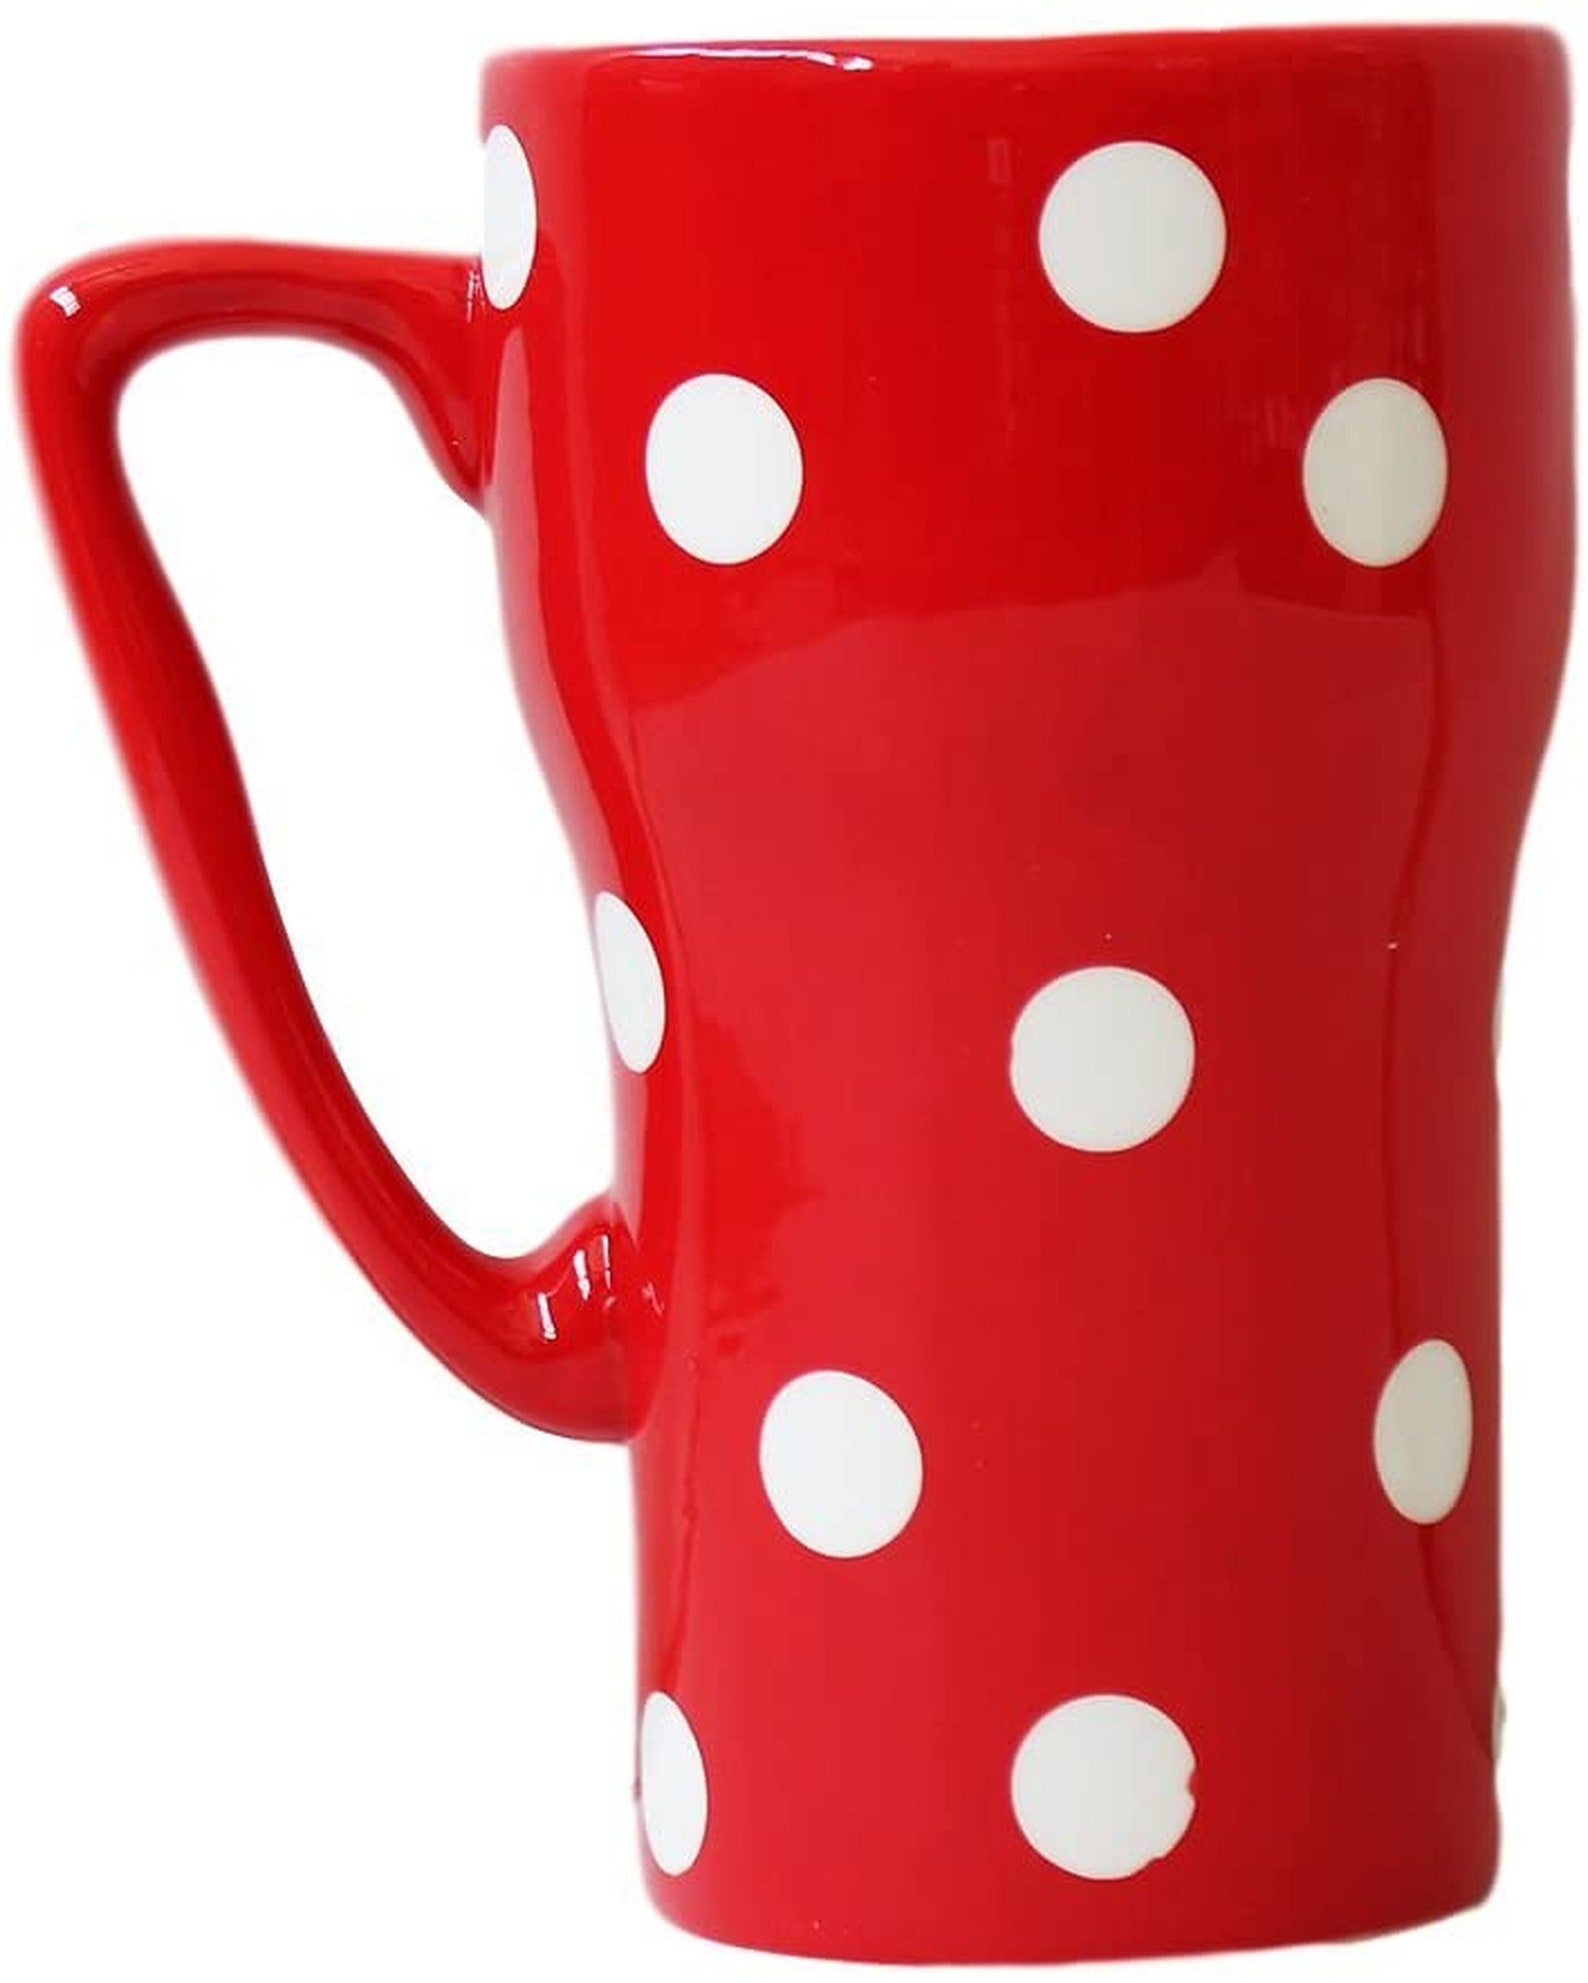 polka dot travel mug